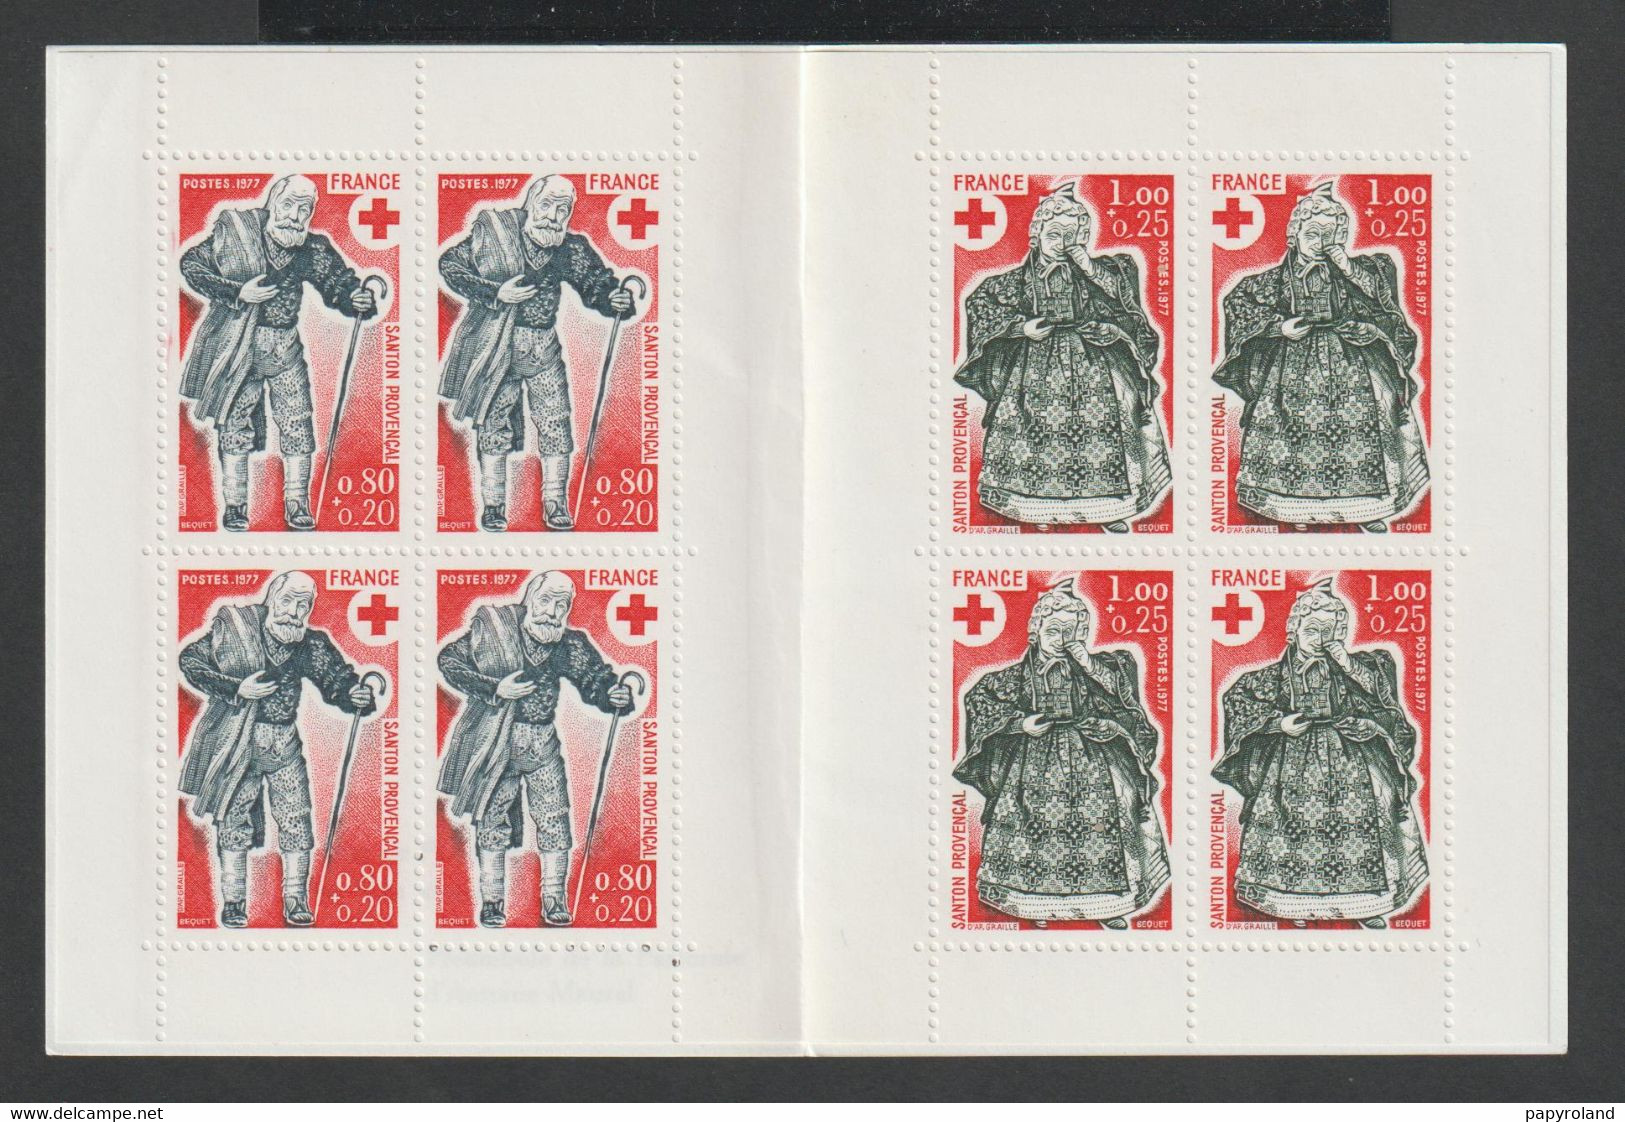 CARNET CROIX ROUGE - N°2026 - 4 Timbres De Chaque (1959 Et 1960) -  1978 - Neuf Sans Charnière - ** - Croix Rouge